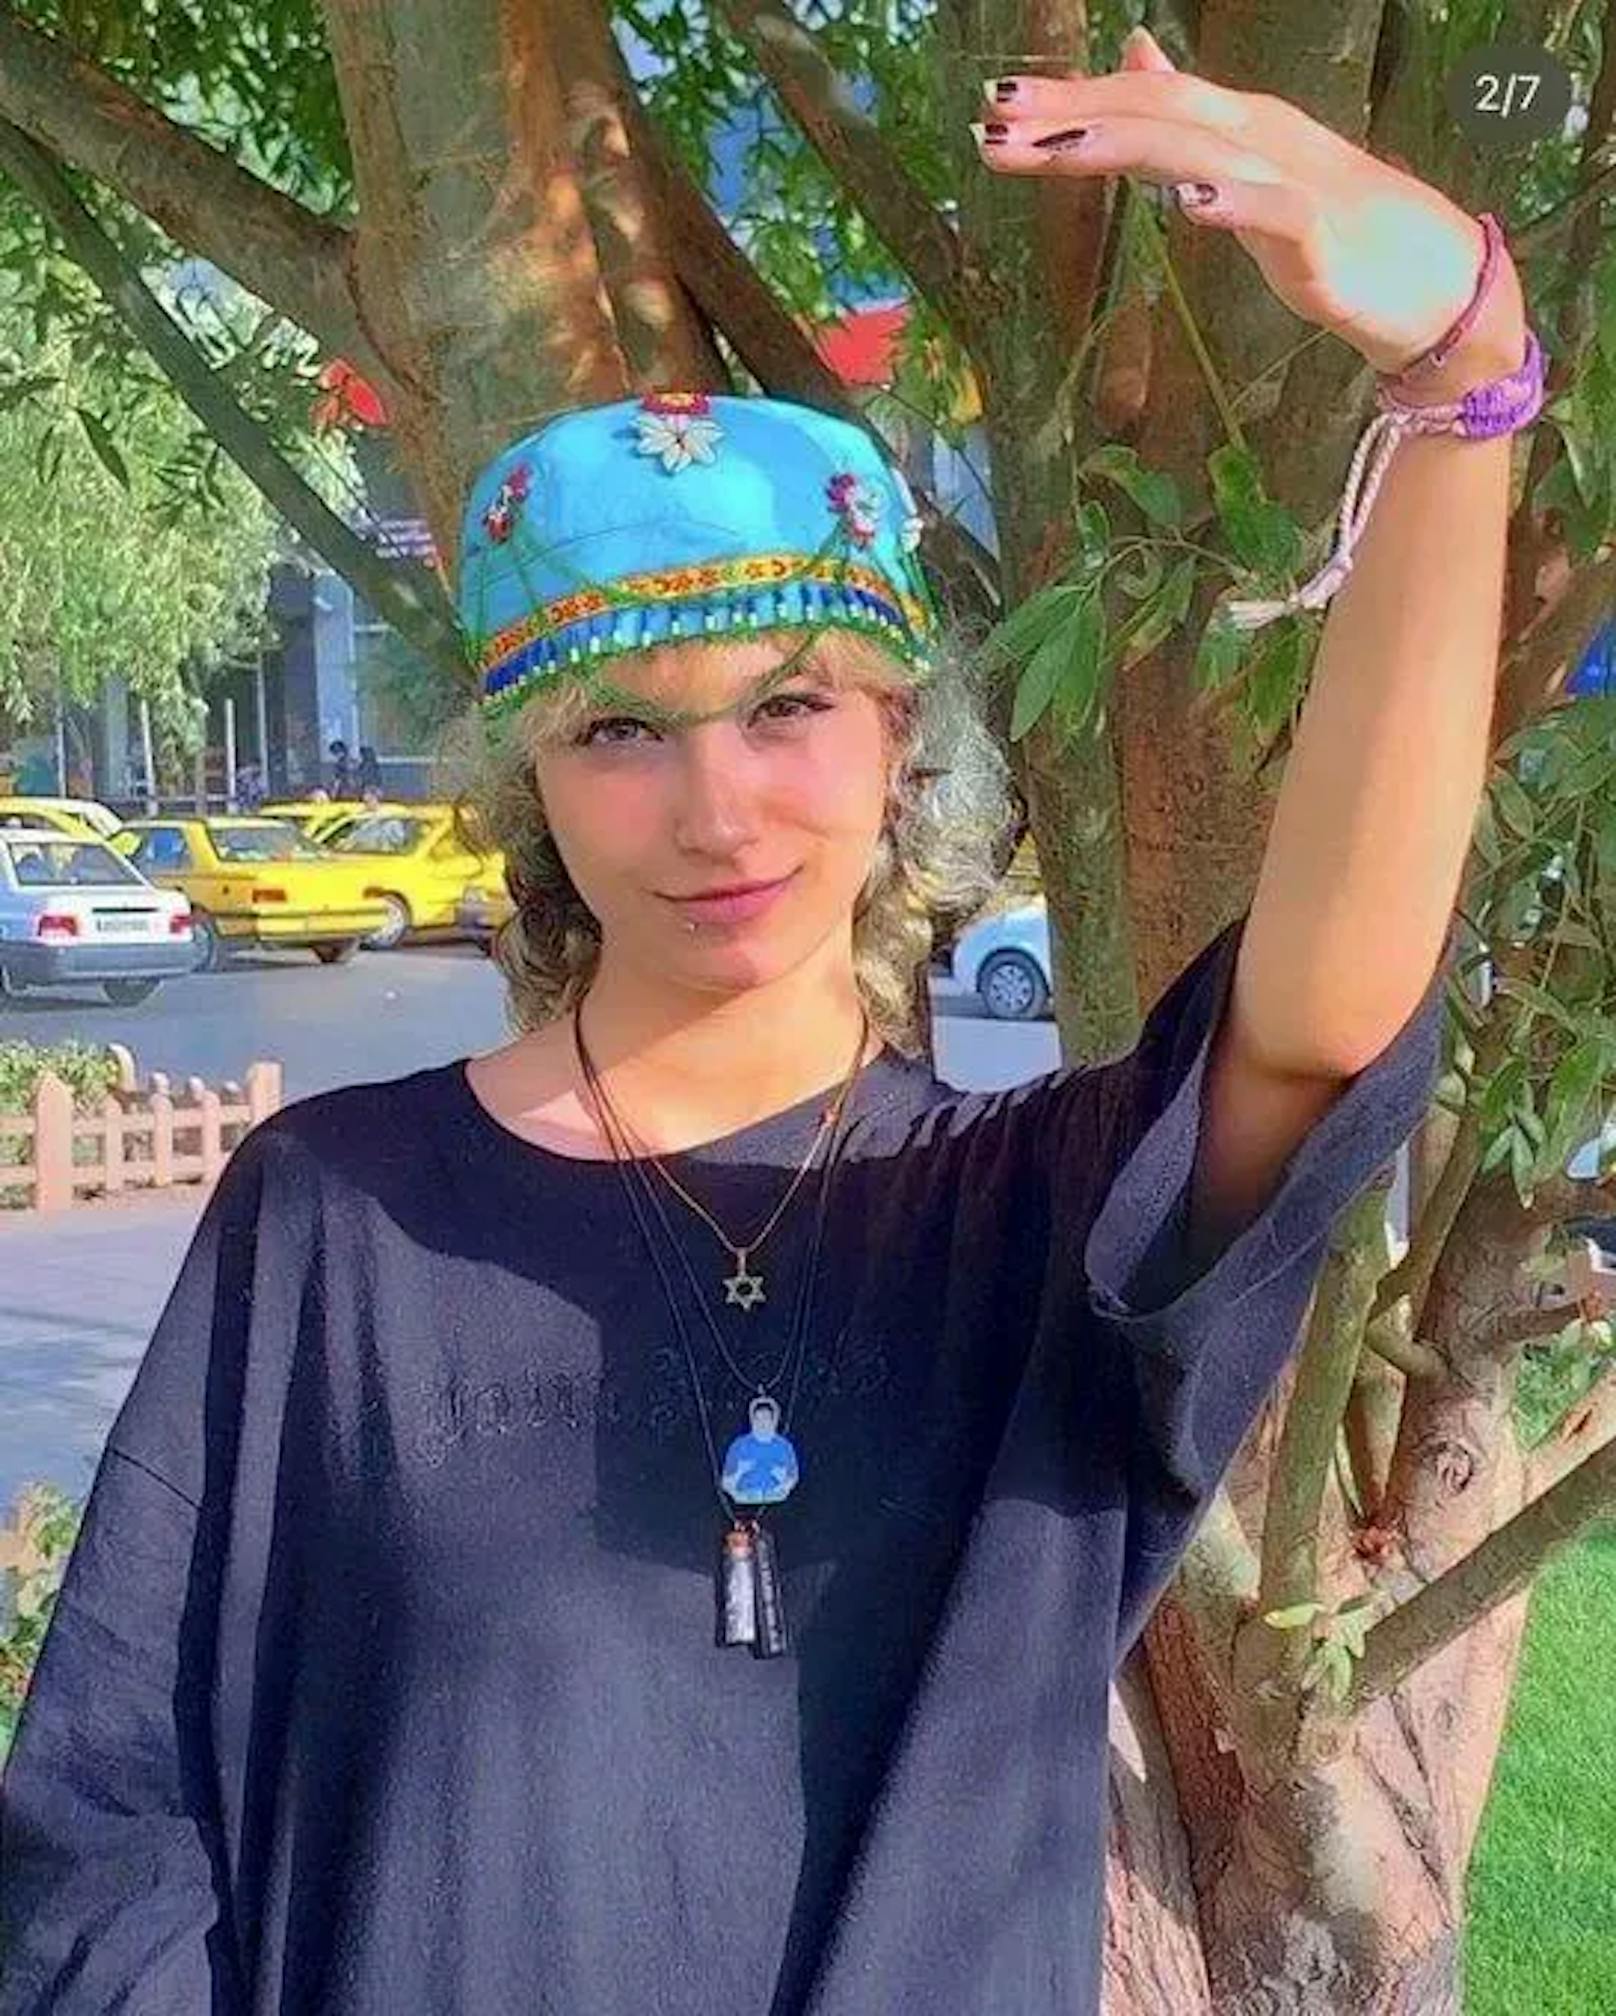 Am 10. Oktober wurde die 20-jährige Iranerin Armita Abbasi festgenommen. Sie hatte sich in sozialen Medien nicht anonymisiert regimekritisch geäußert.